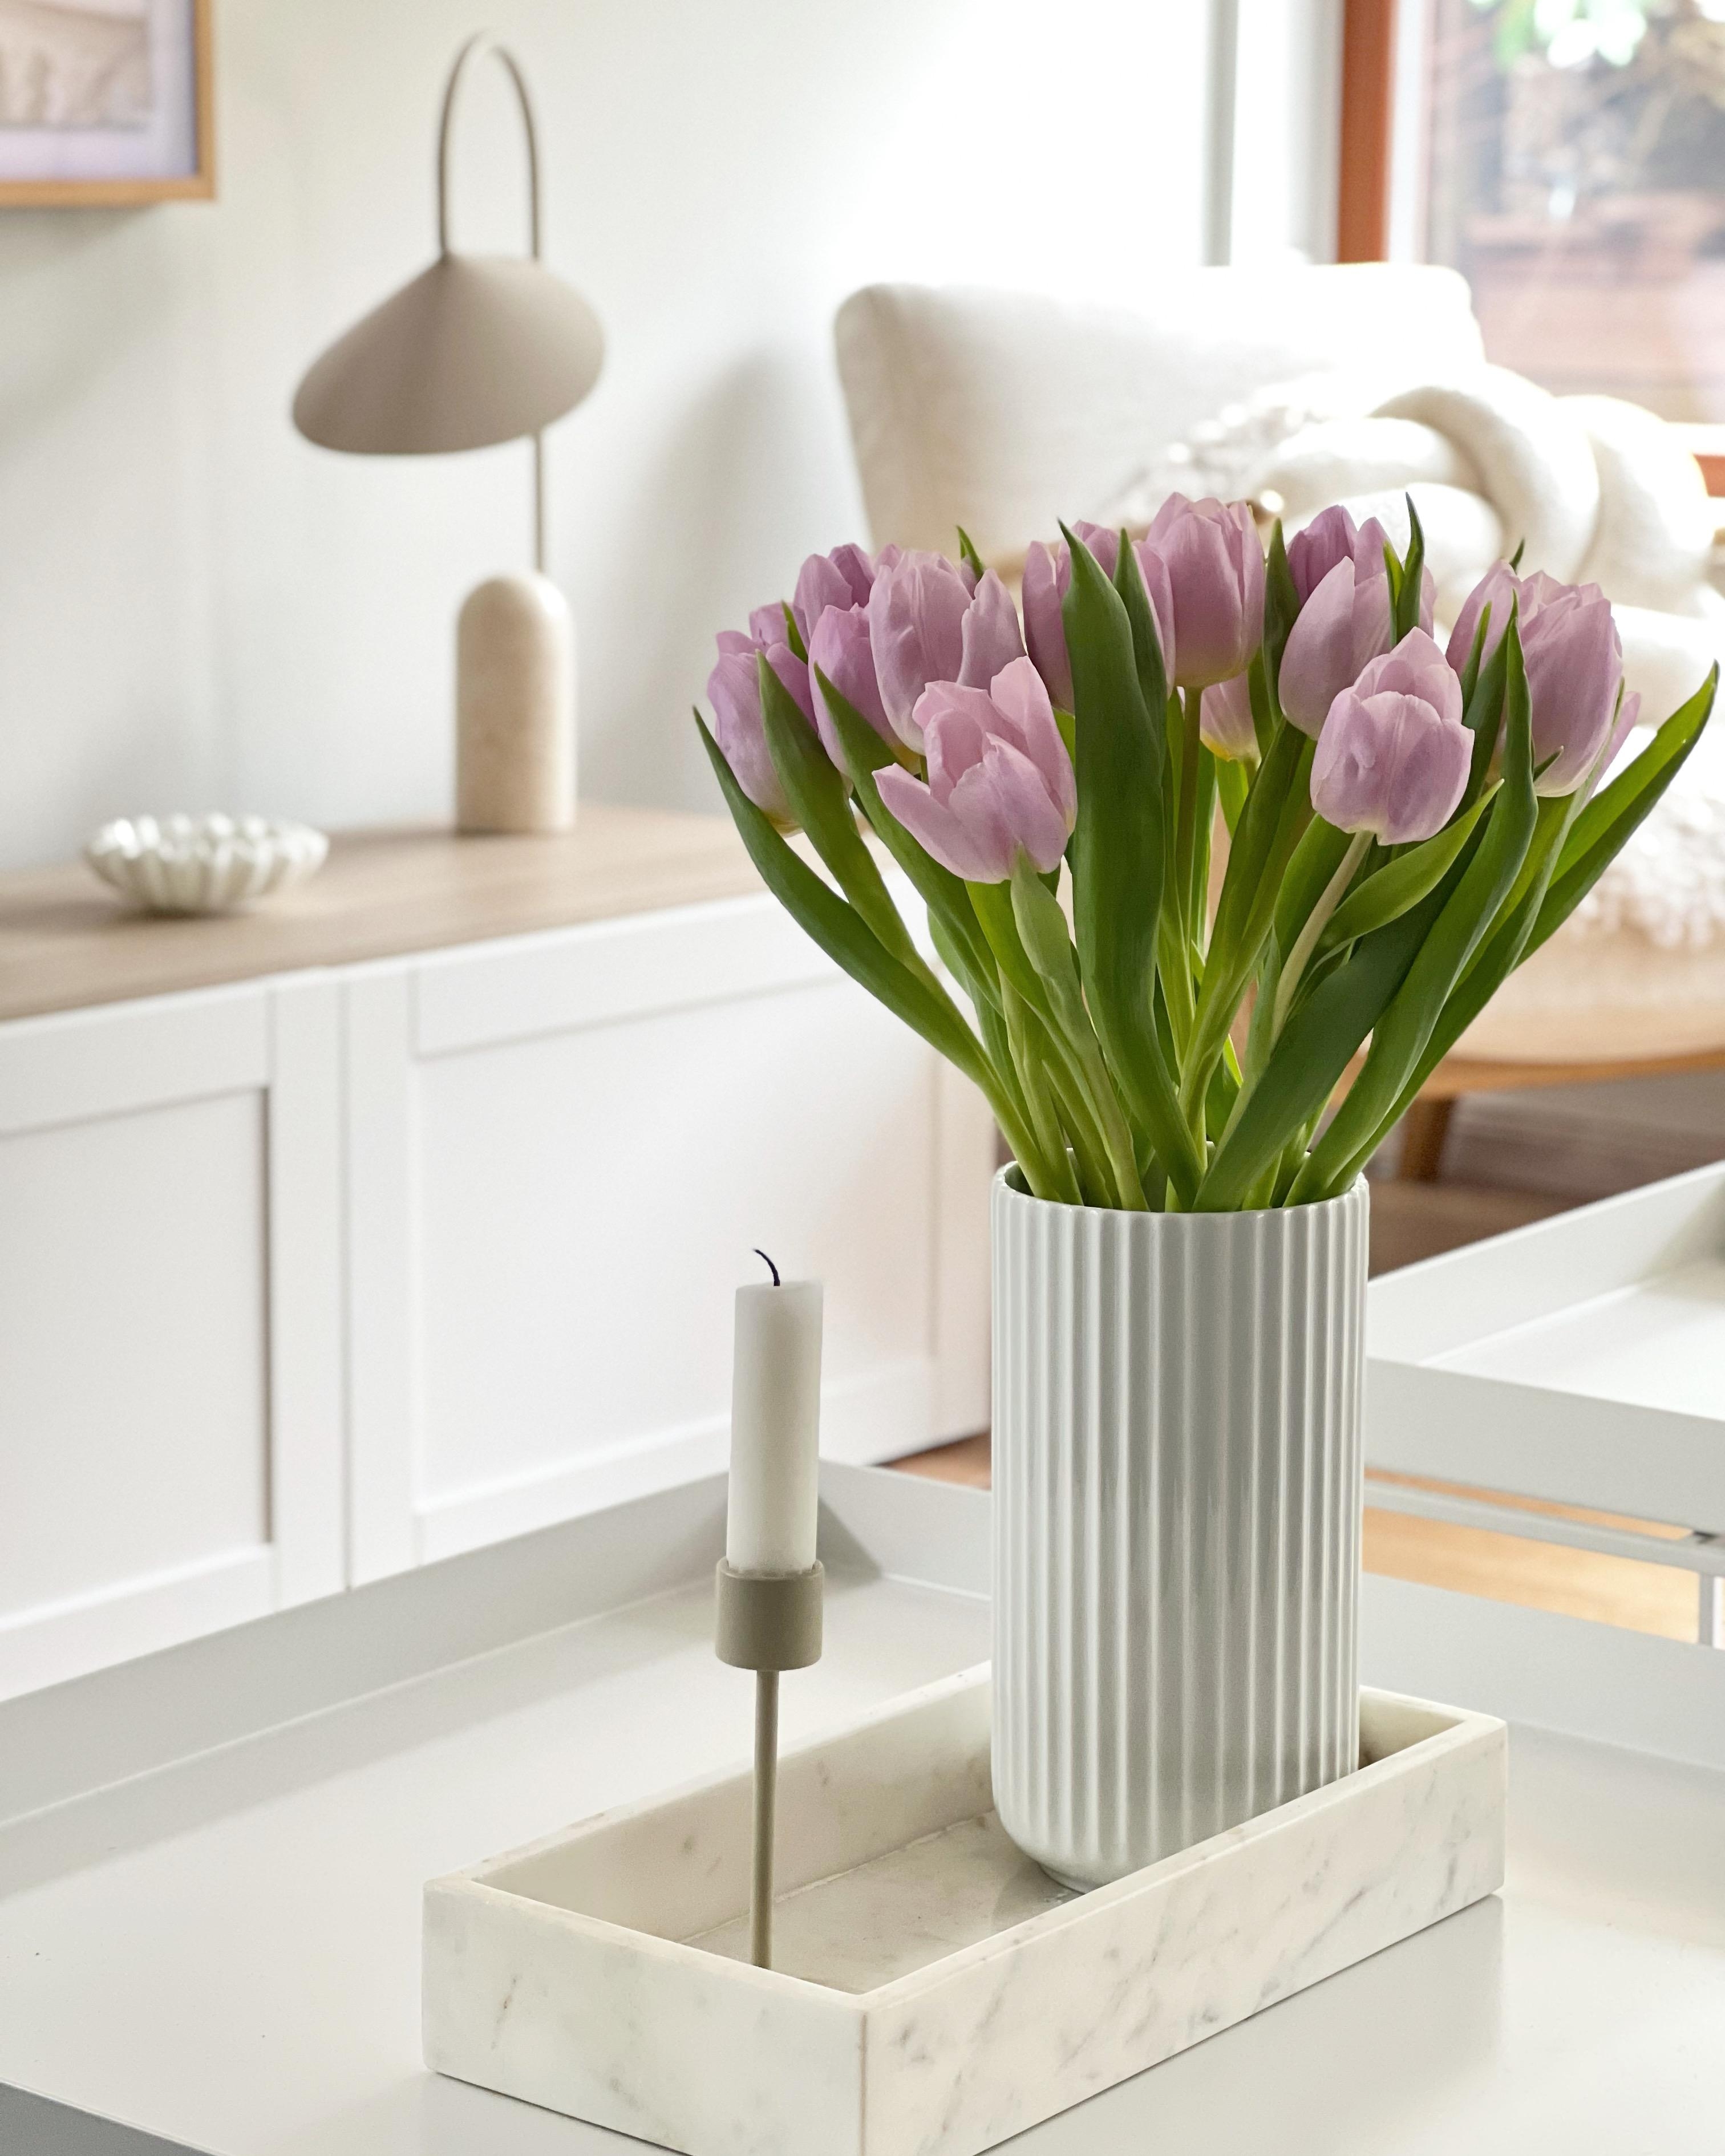 #tulpen #tischdeko #couchtisch #wohnzimmer #frühlingsdeko #frühblüher